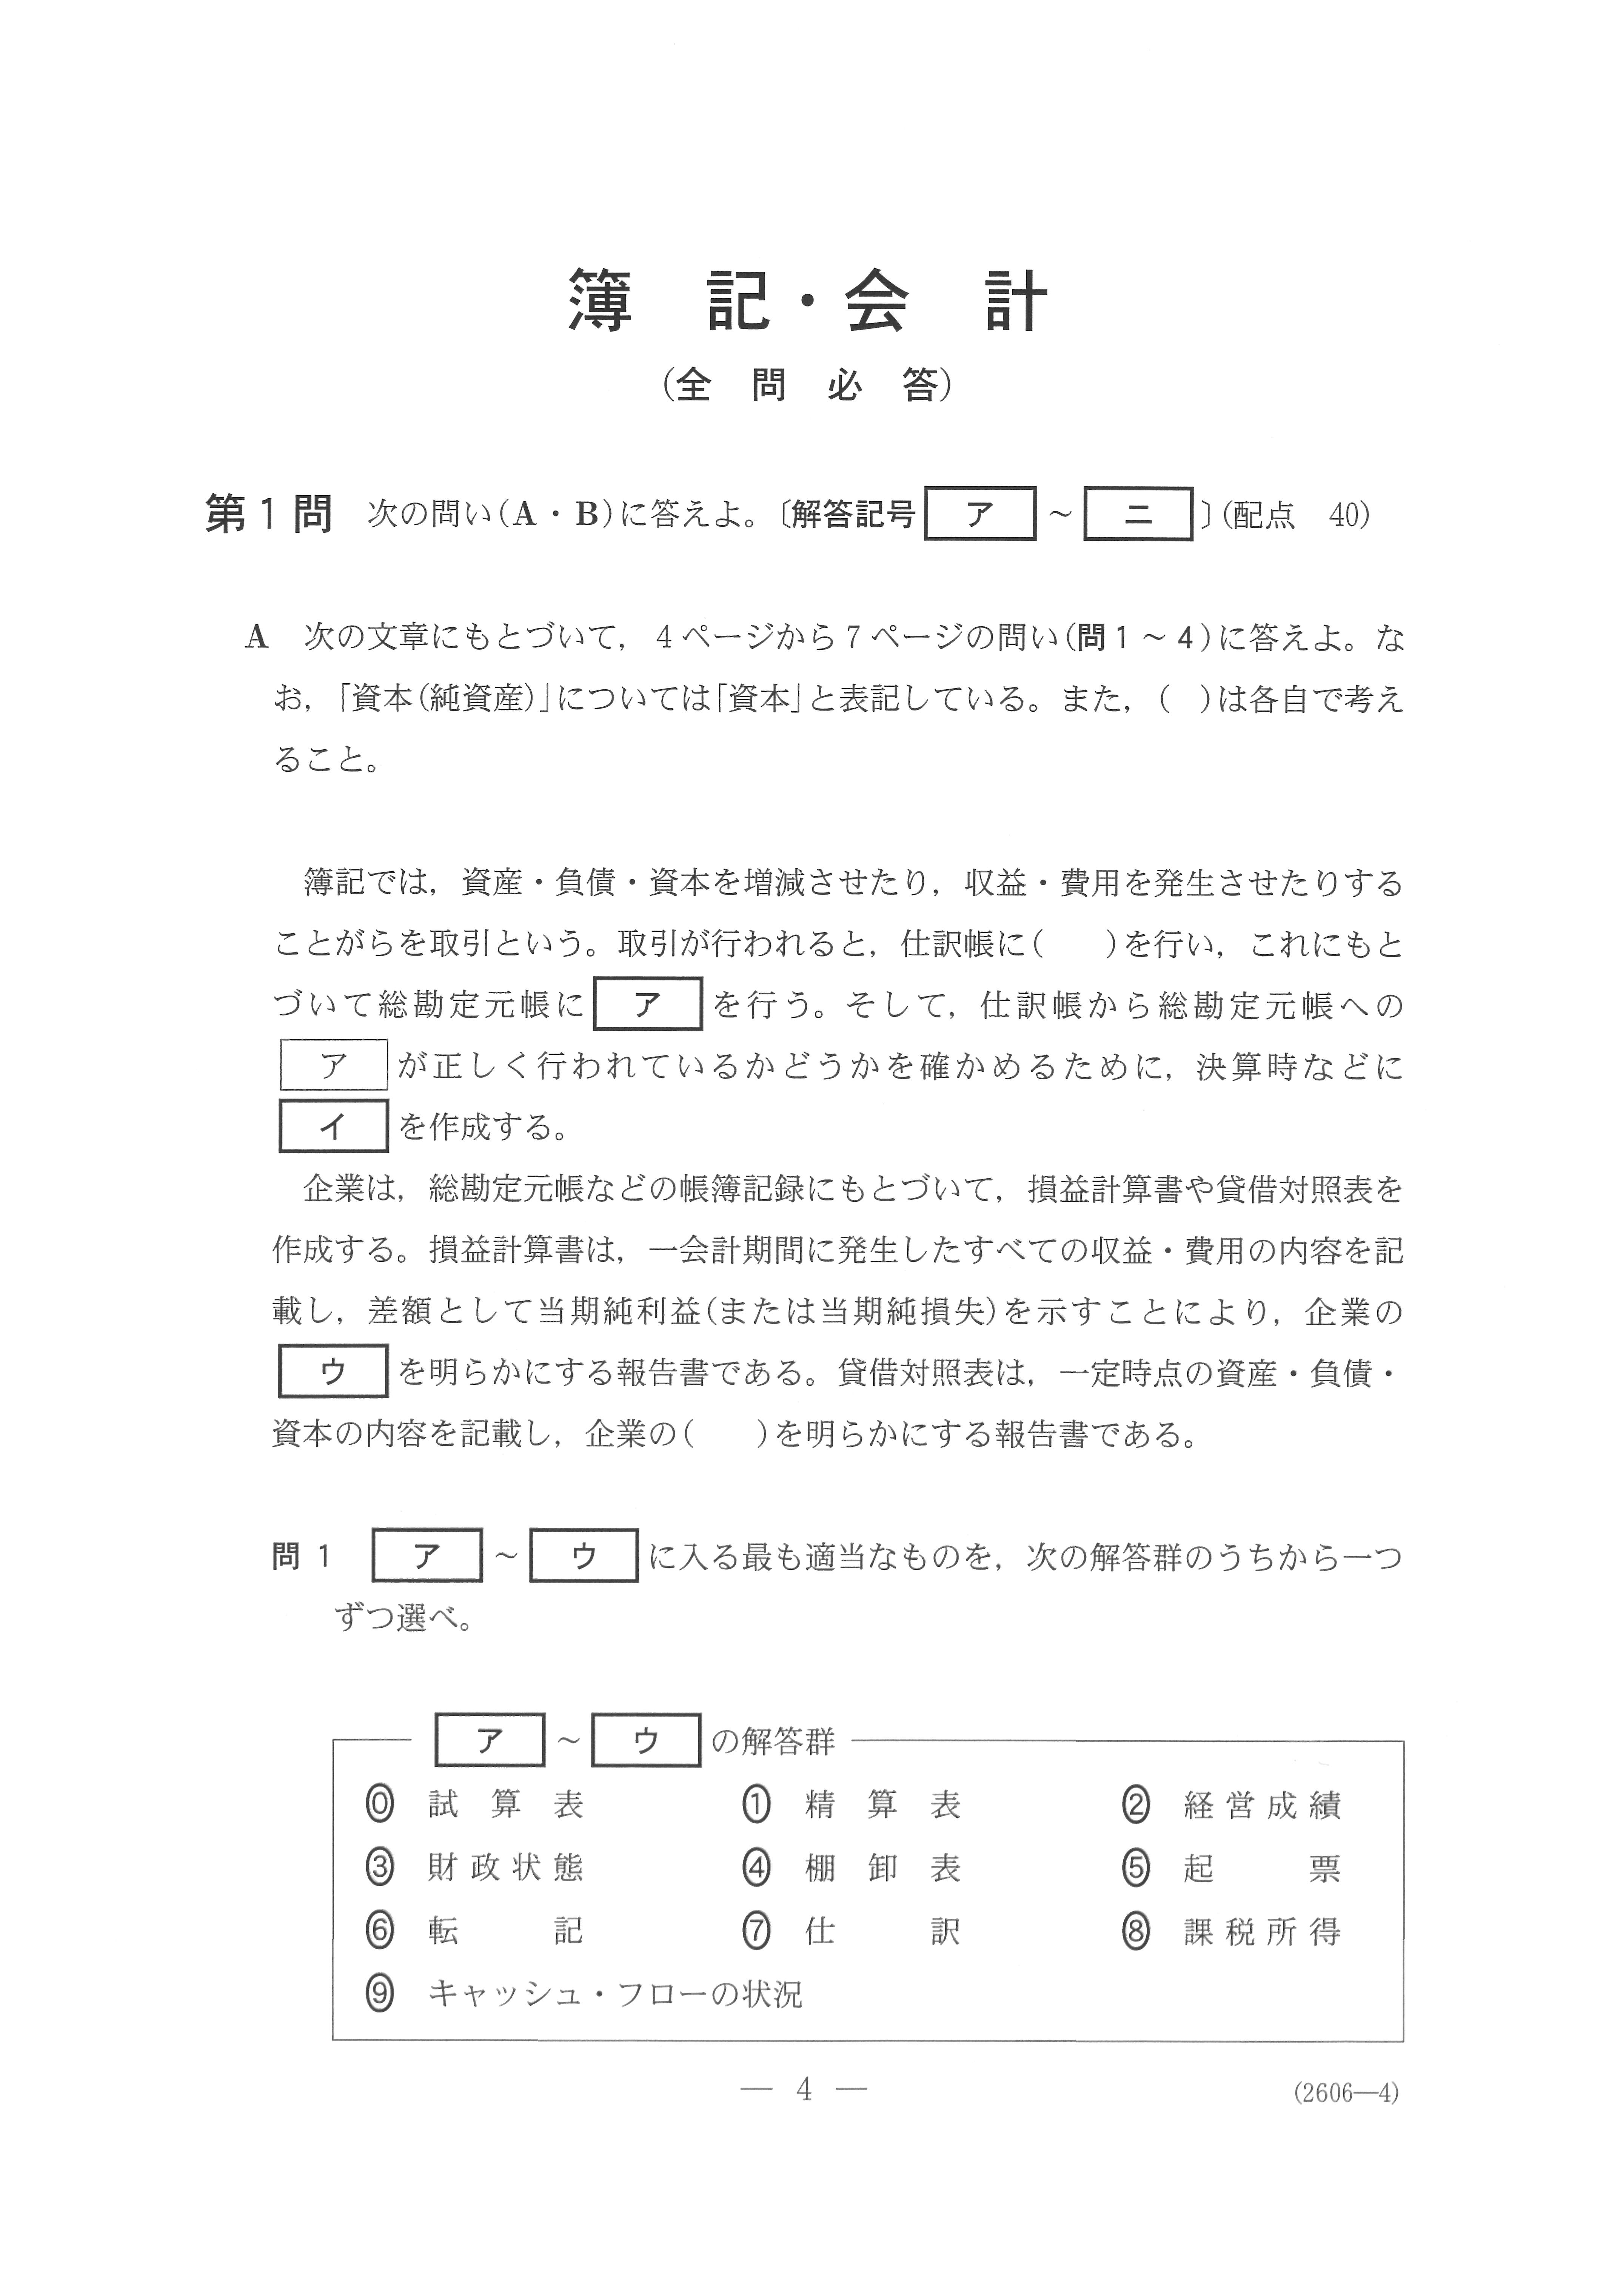 2019年 平成31年,令和元年 数学_簿記・会計 大学入試センター試験過去問